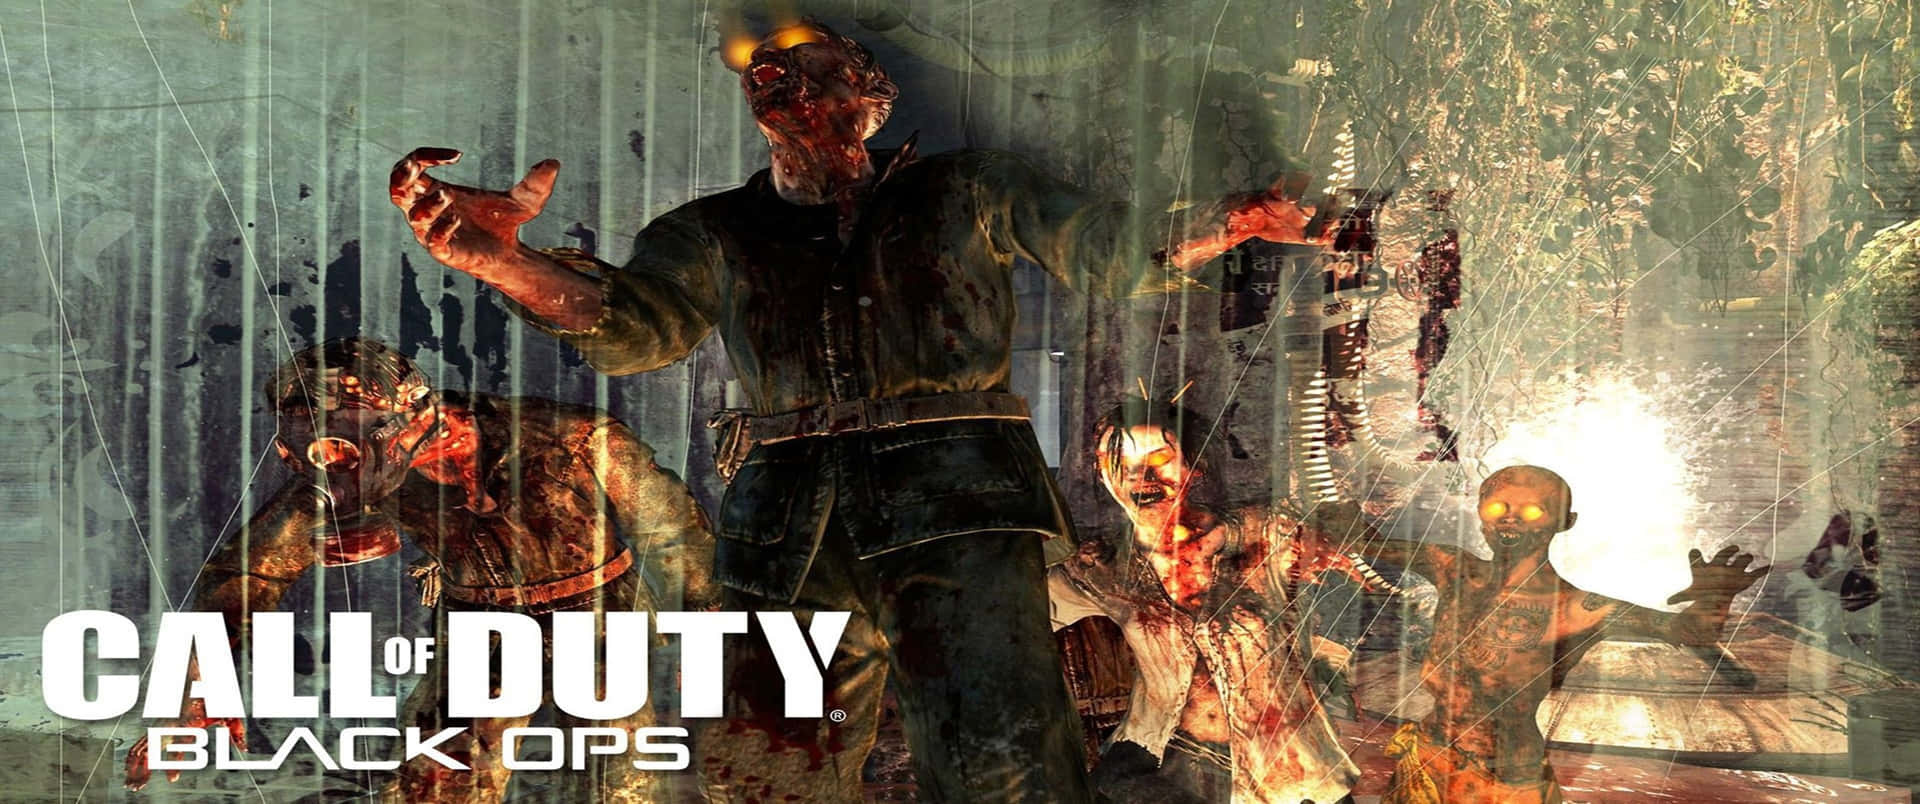 Fondode Pantalla De Call Of Duty Black Ops Cold War Zombies En 3440x1440p